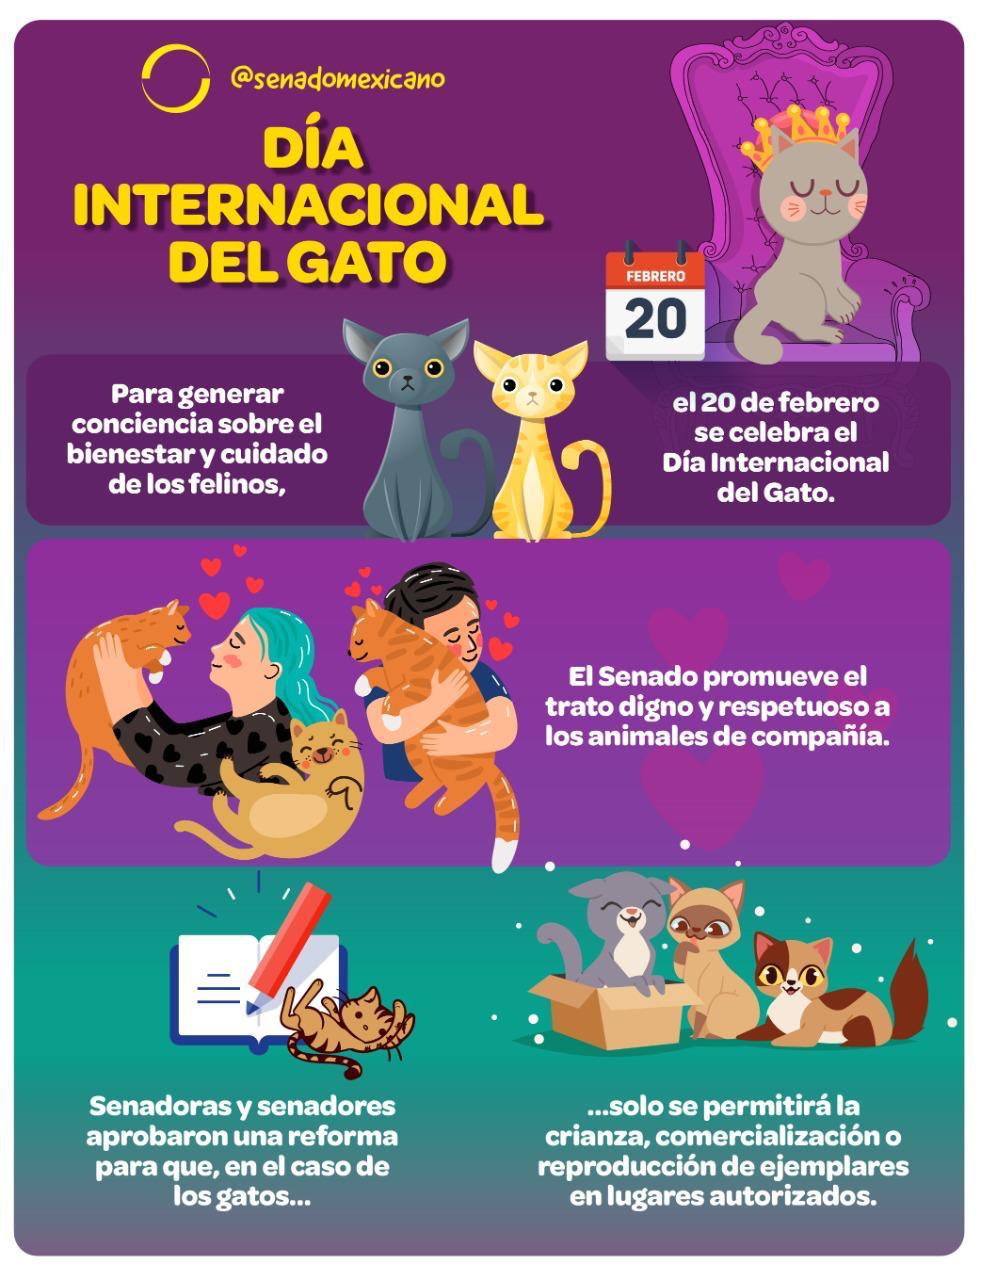 Día Internacional del Gato 20 de febrero Revista Macroeconomia